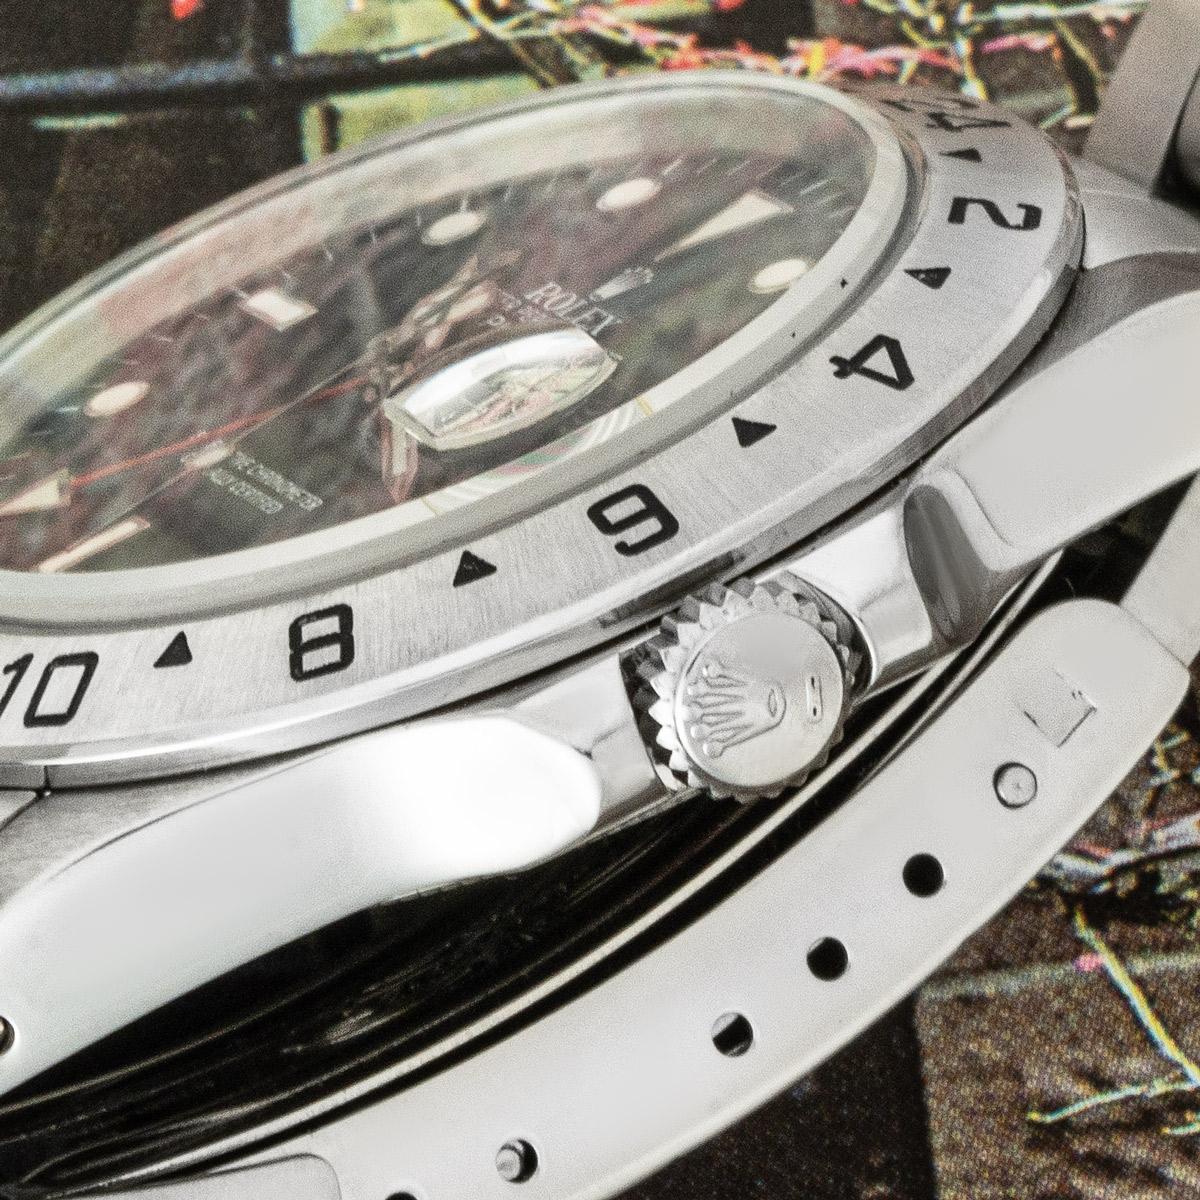 Eine 40 mm Explorer II von Rolex. Sie verfügt über ein schwarzes Zifferblatt mit Datumsanzeige, einen roten 24-Stunden-Zeiger und eine feste Lünette aus Edelstahl mit einer 24-Stunden-Anzeige. Die Uhr ist mit einem Saphirglas, einem Automatikwerk